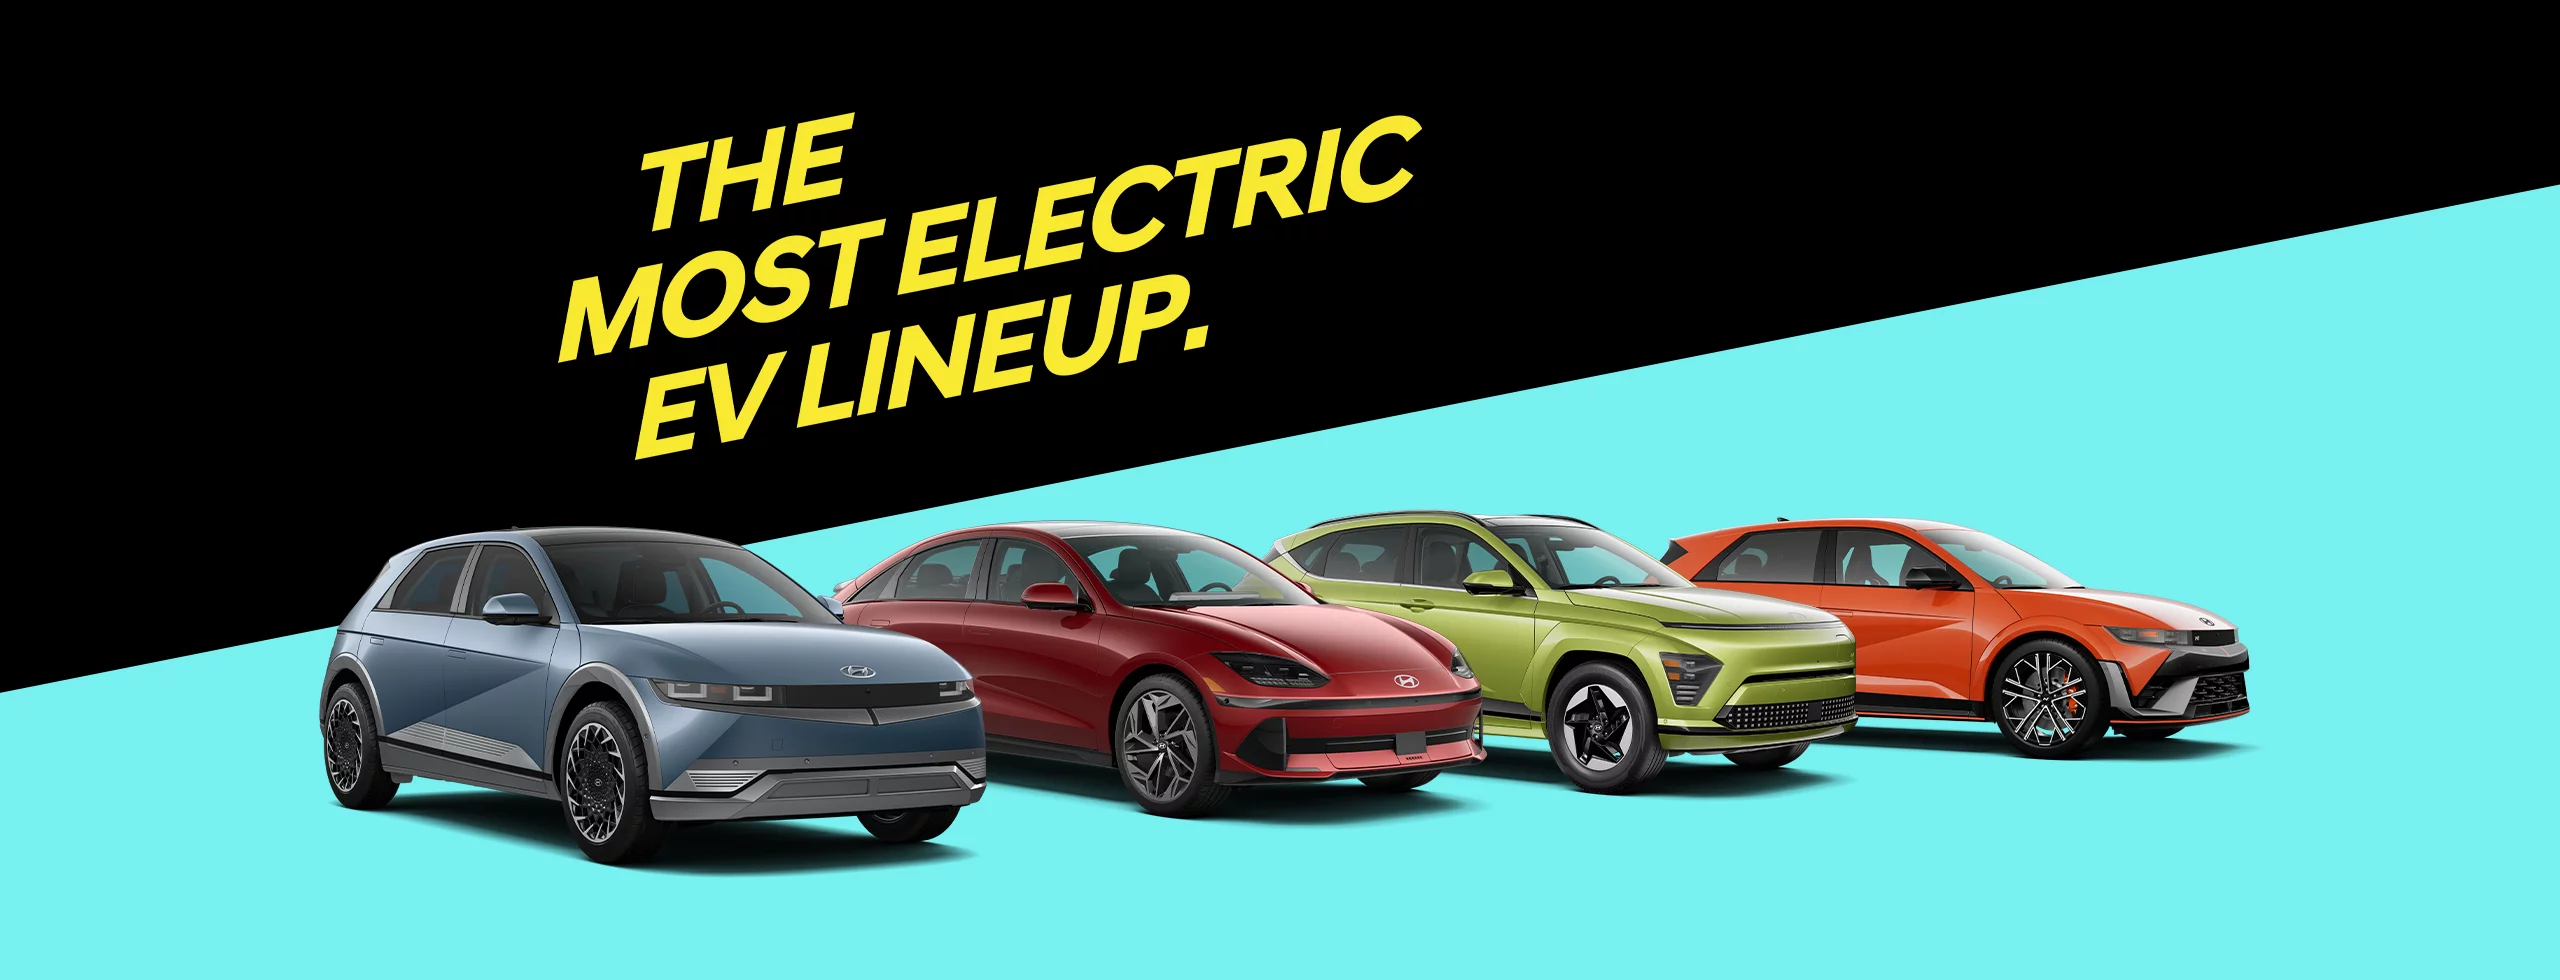 Presentamos nuestra línea de vehículos eléctricos.